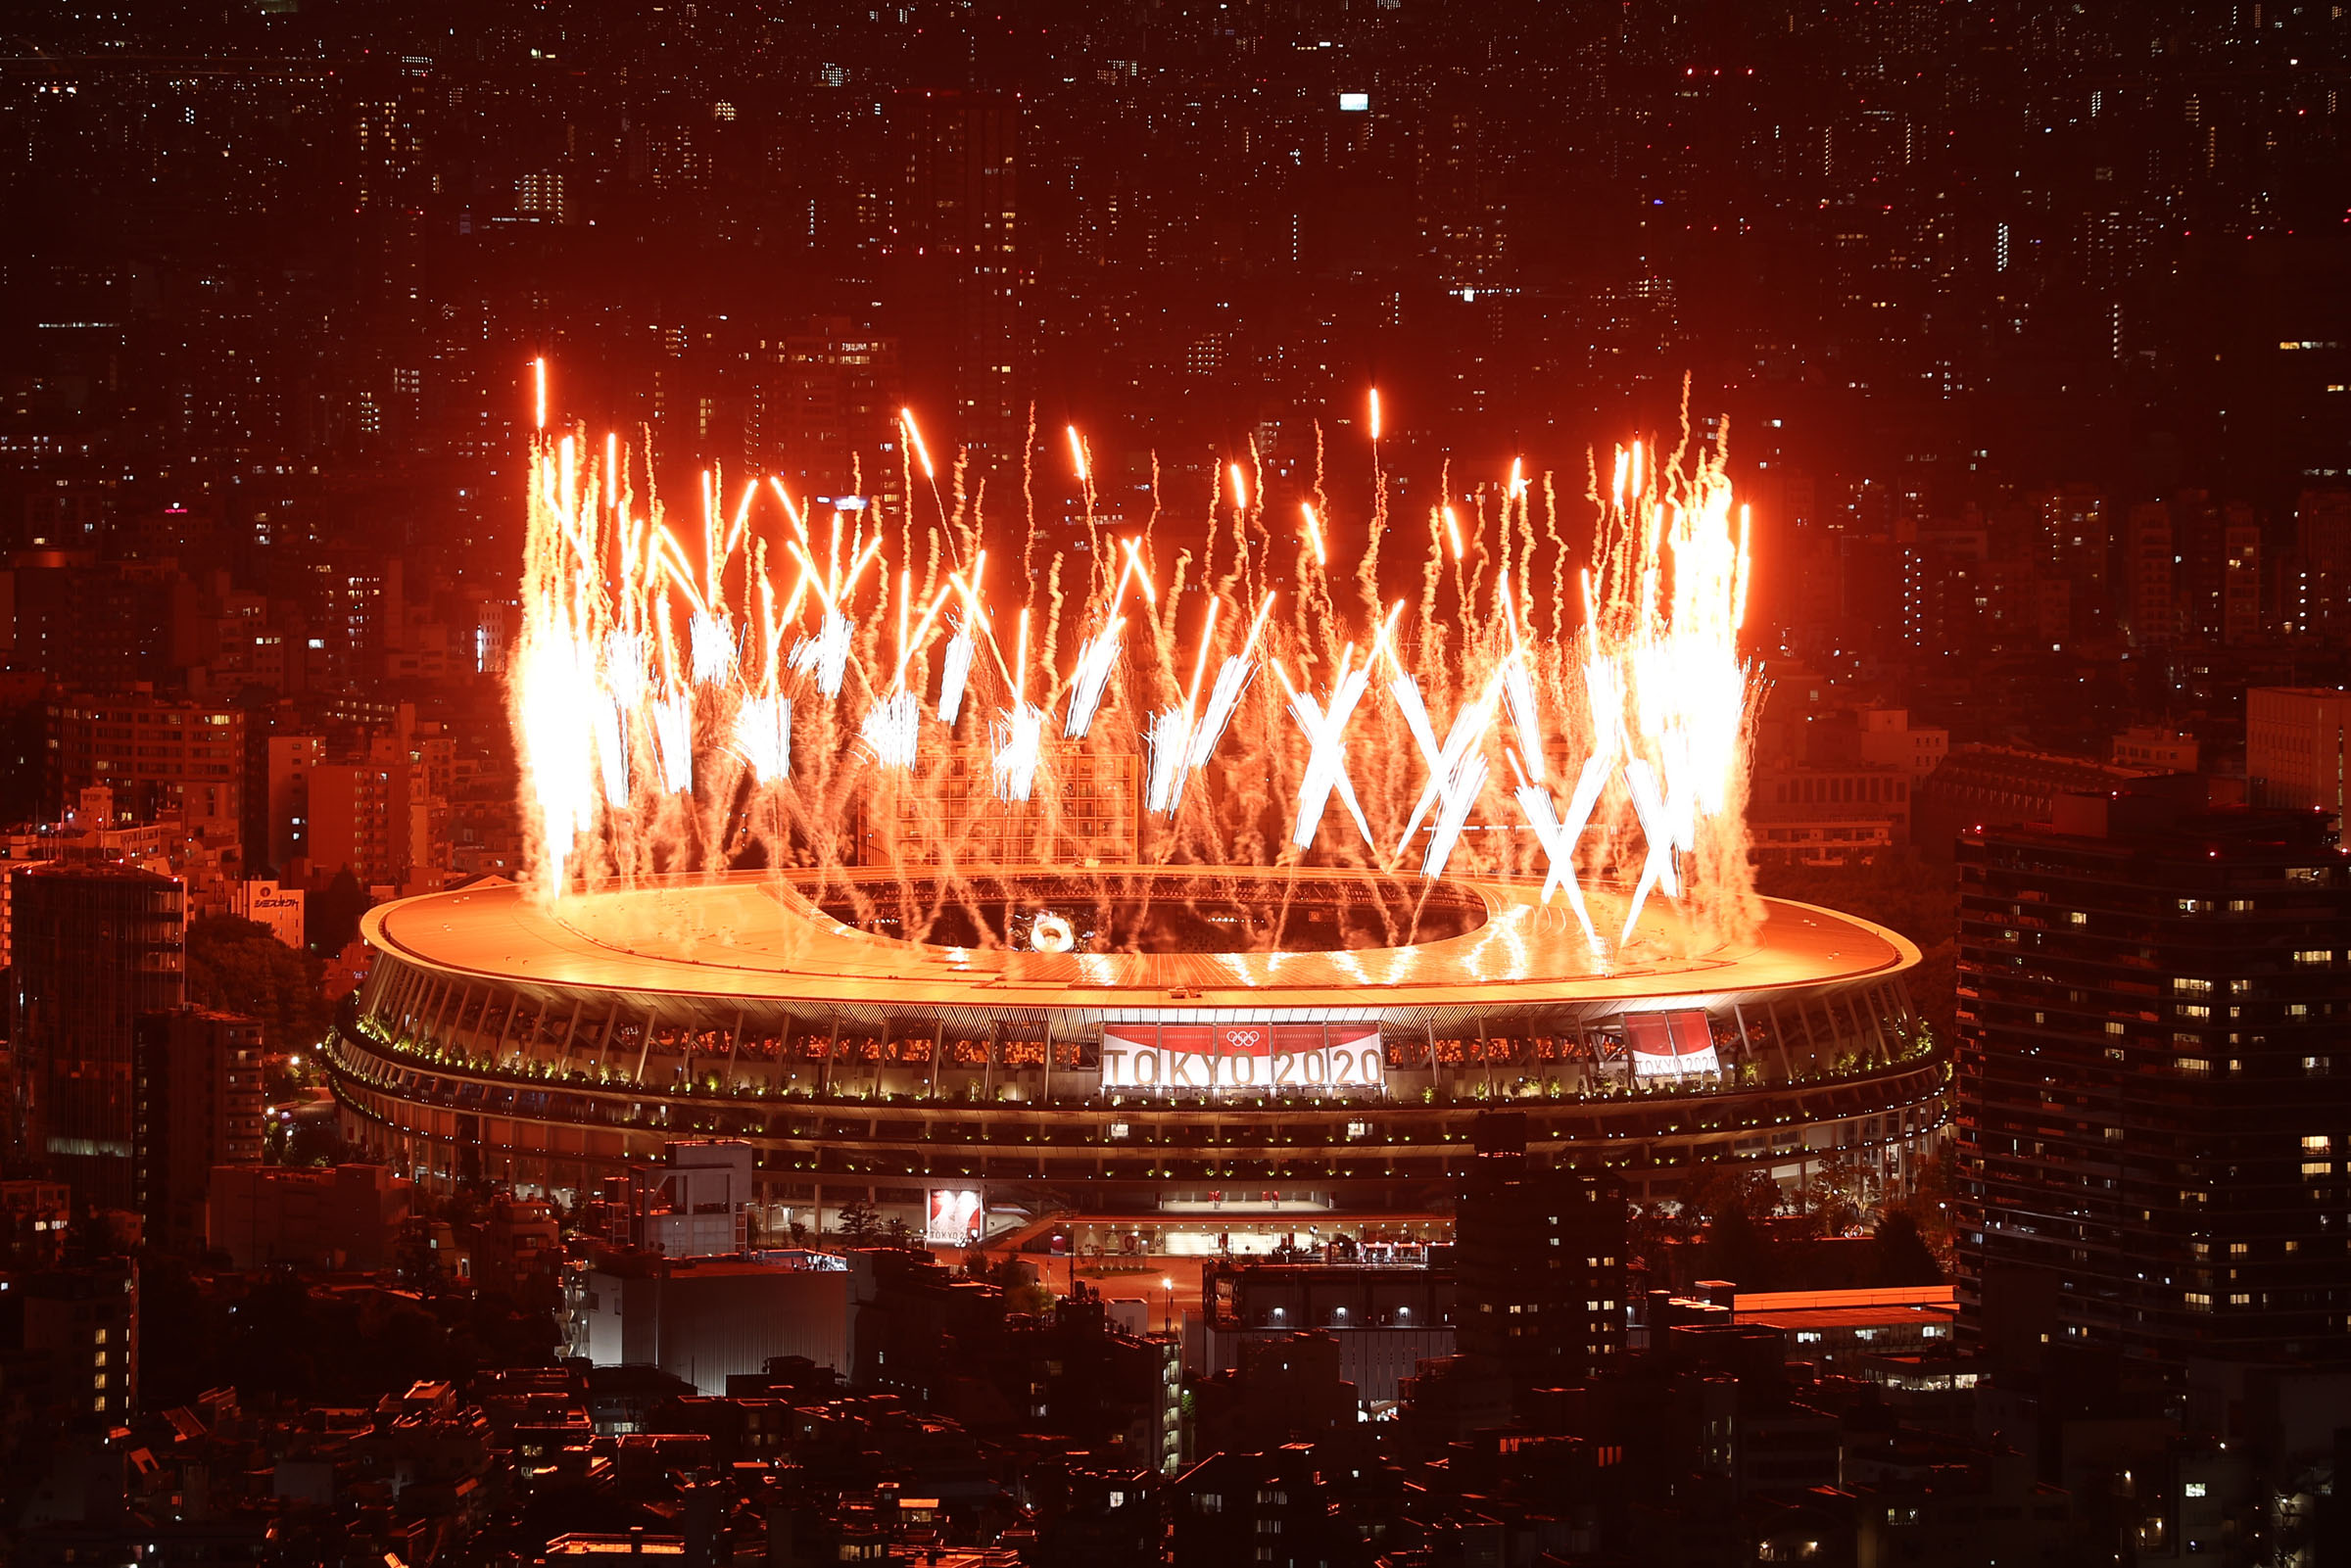 टोकियो ओलम्पिक : सरस्वती चौधरी पहिचो चरणबाटै बाहिरिइन्